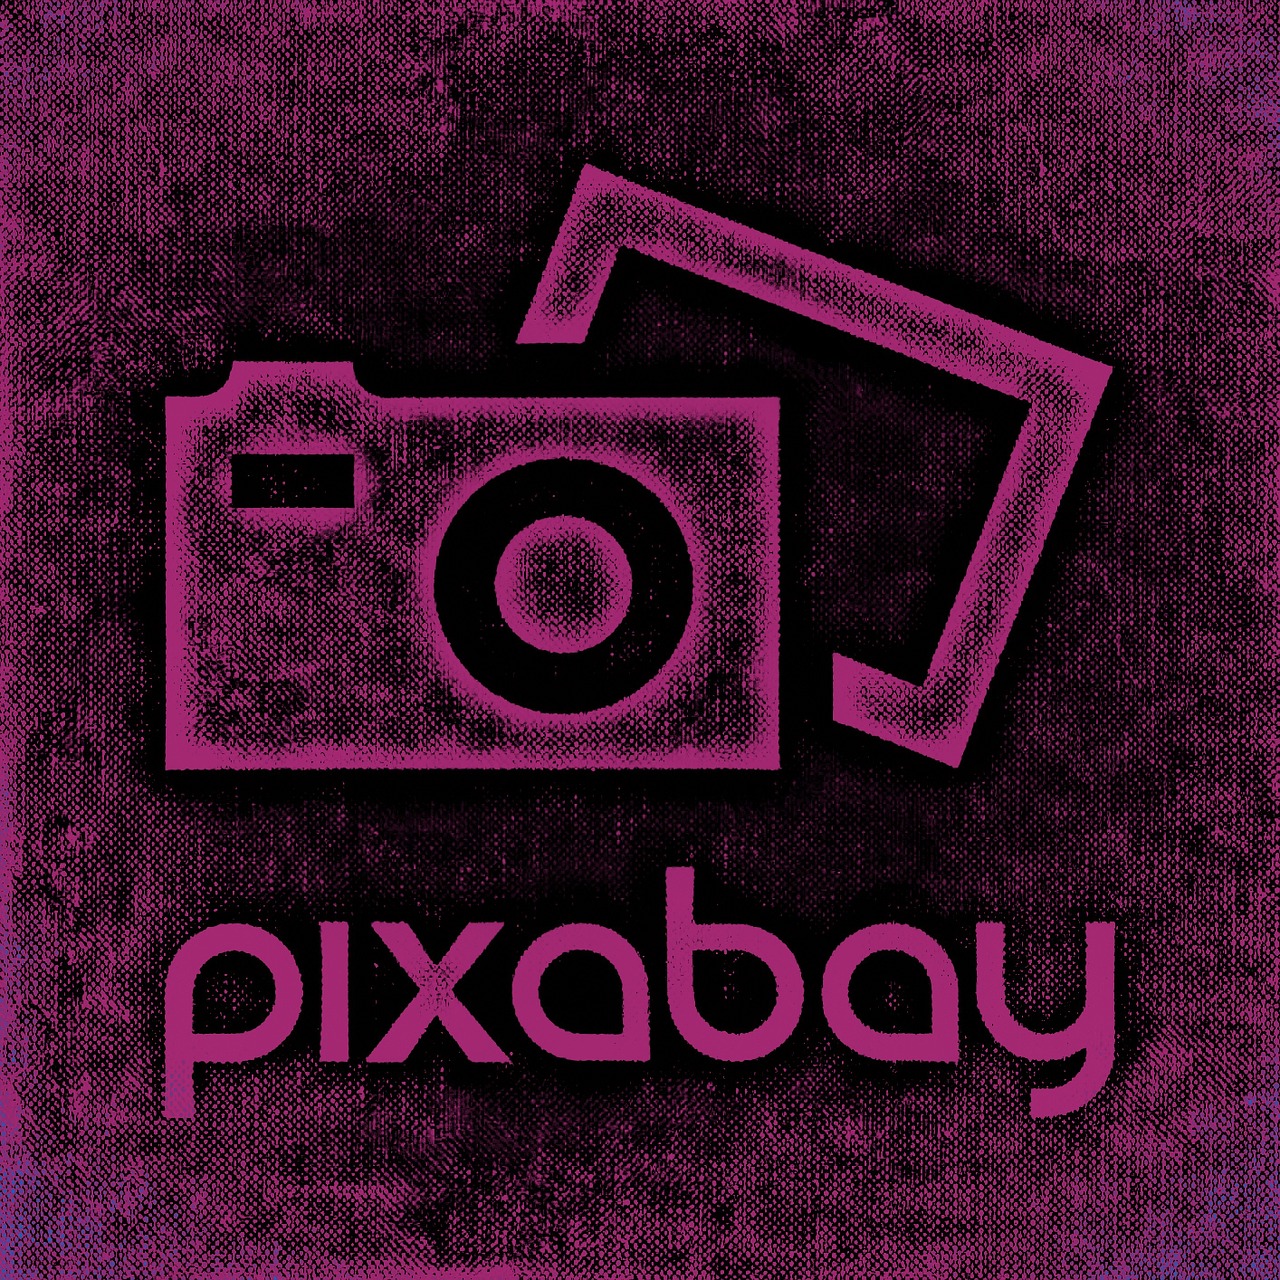 pixabay logo lettering free photo